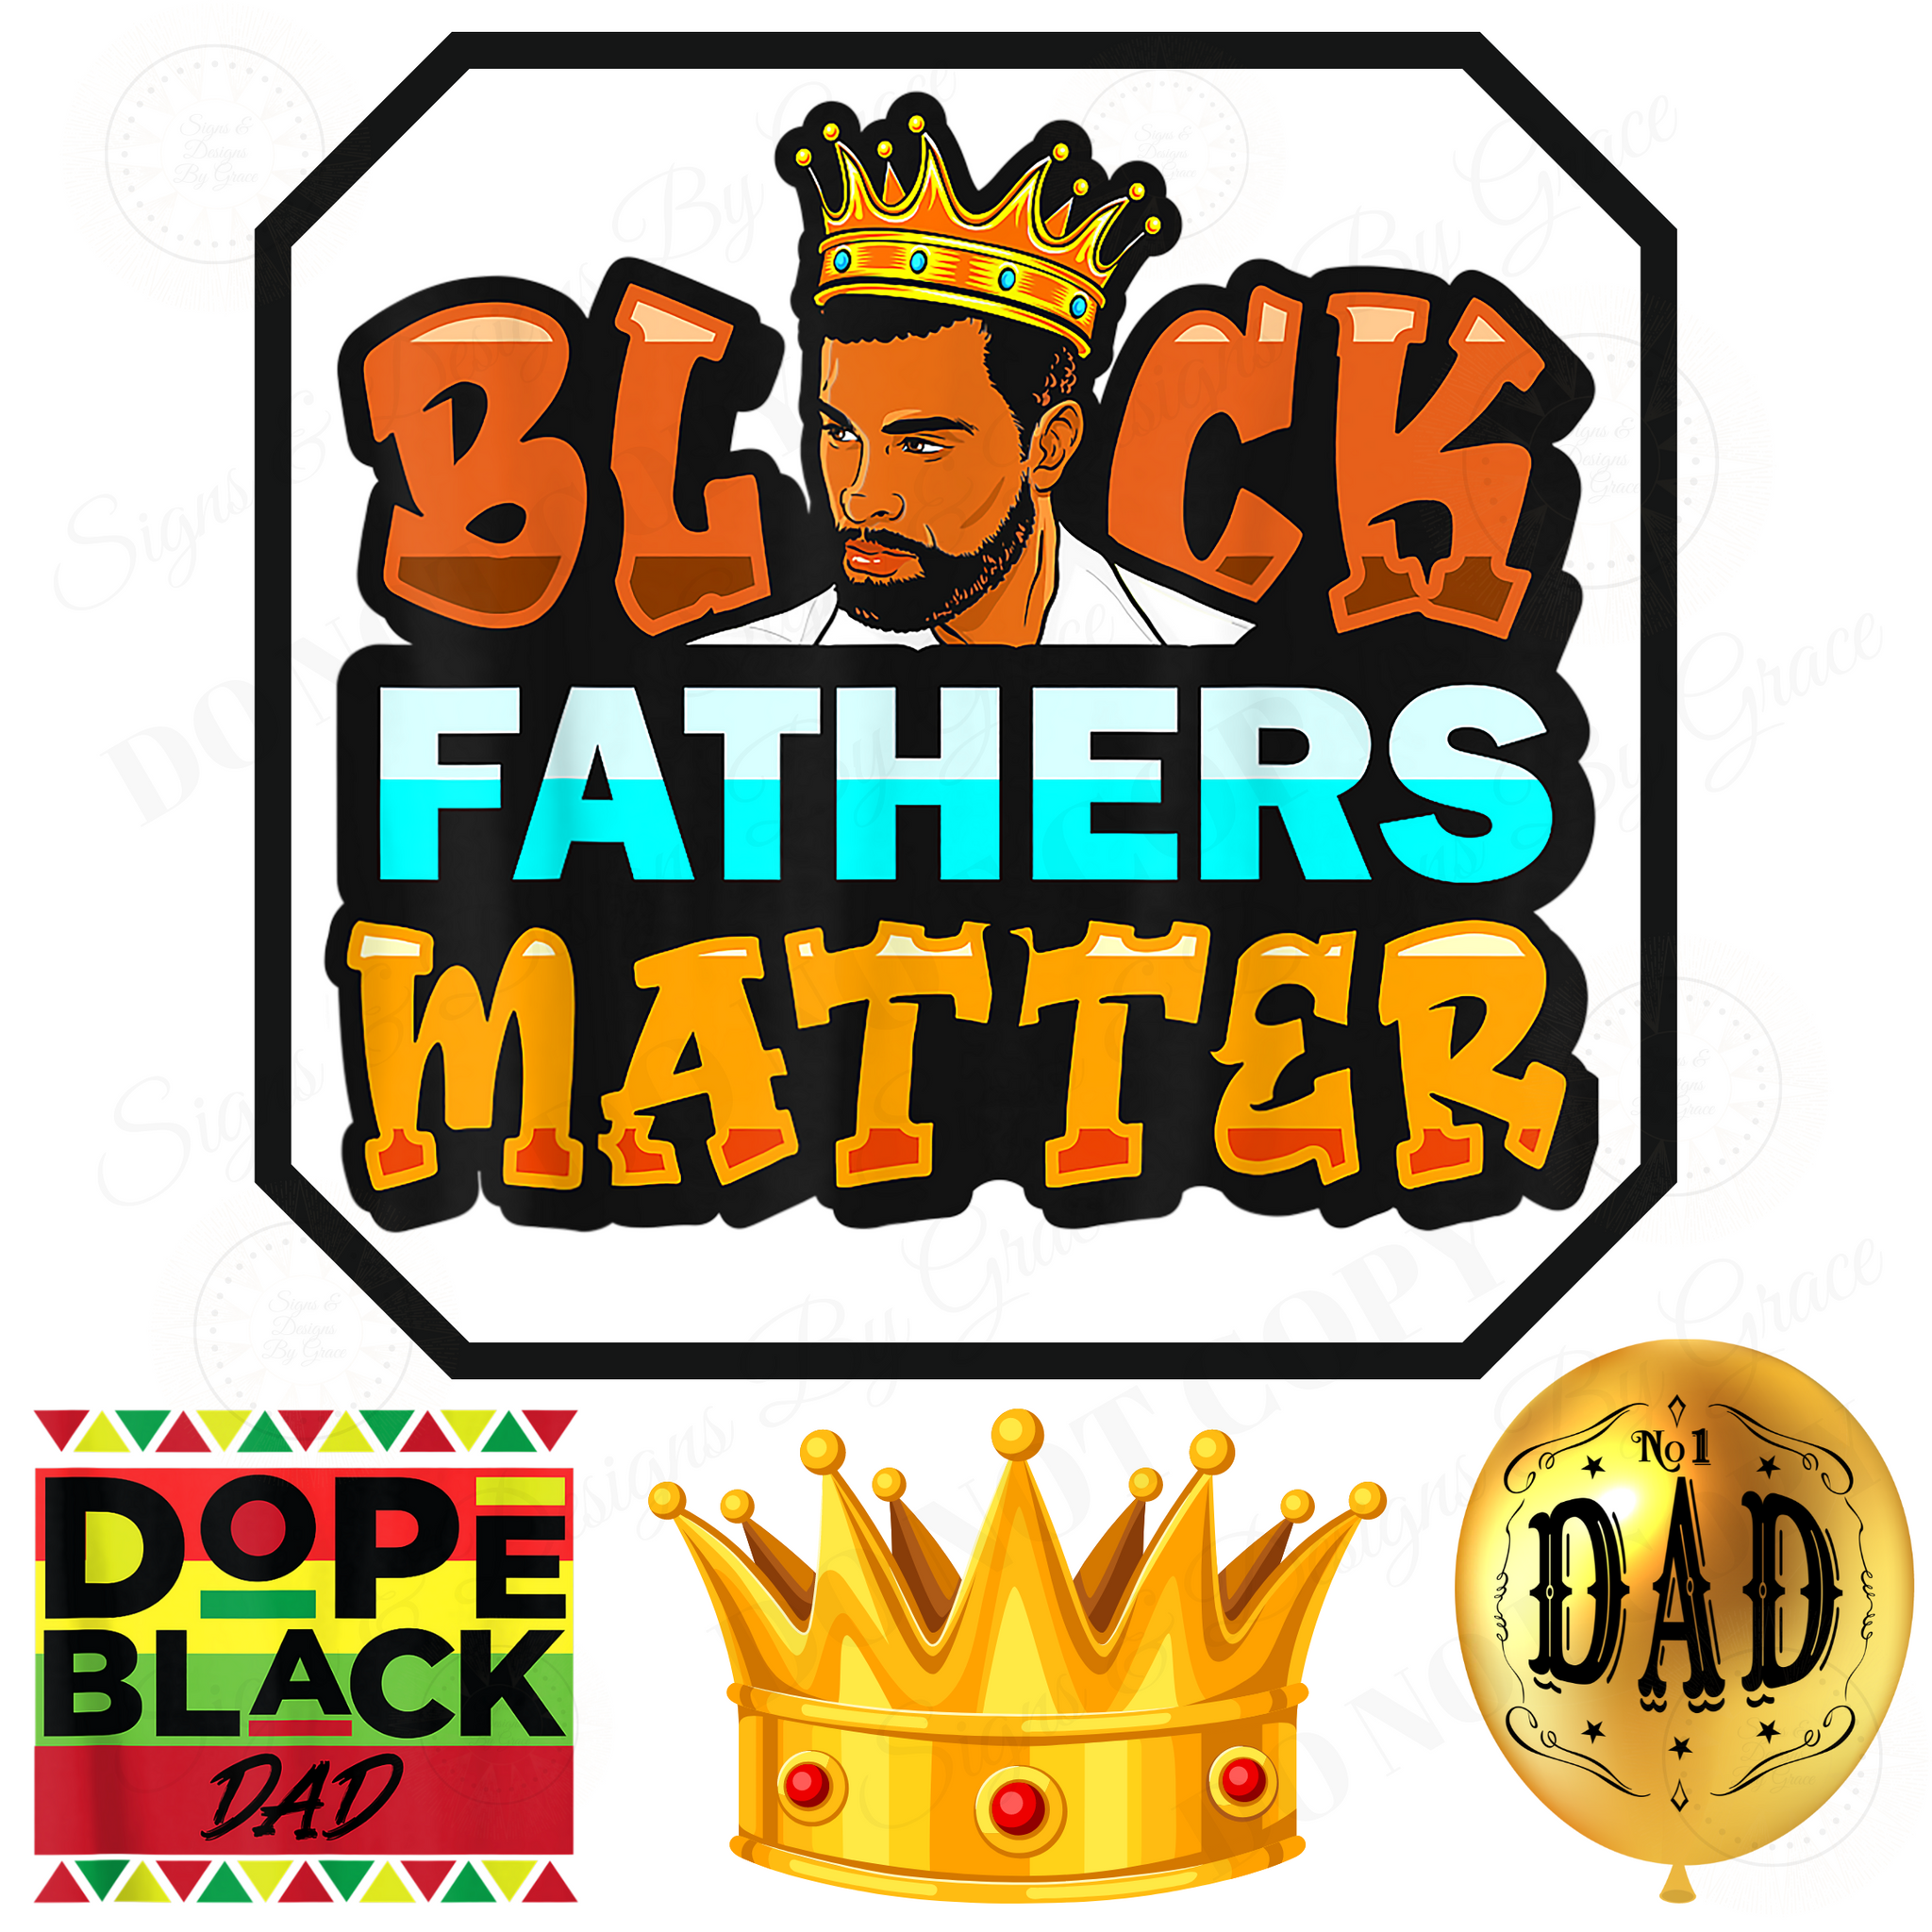 BLACK FATHERS MATTER